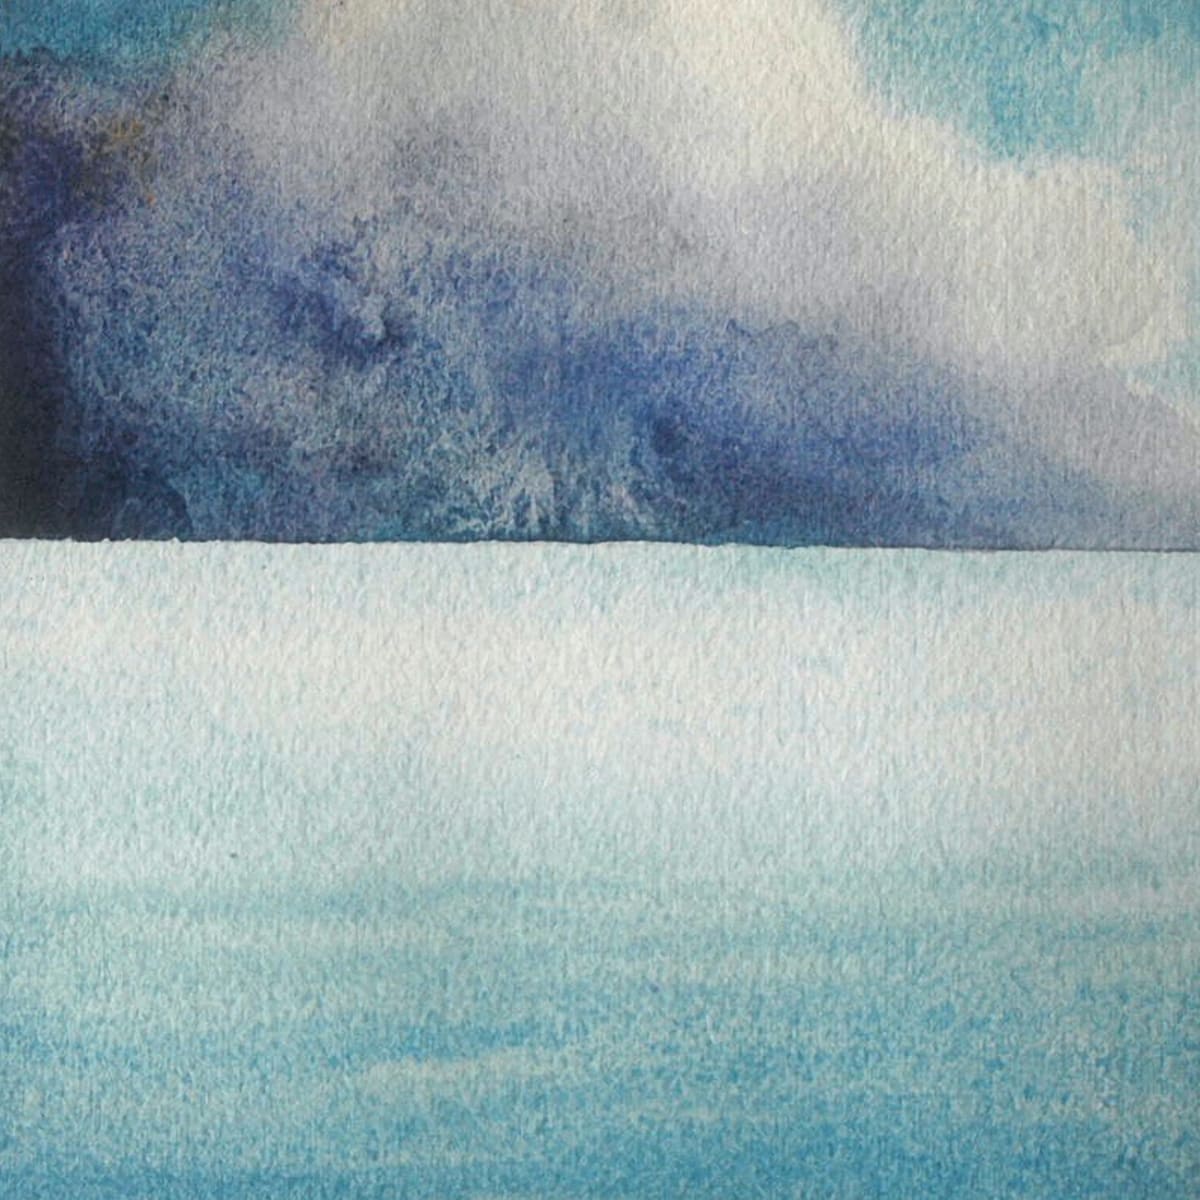 Lake Michigan VIII an original watercolor by Helen R Klebesadel 